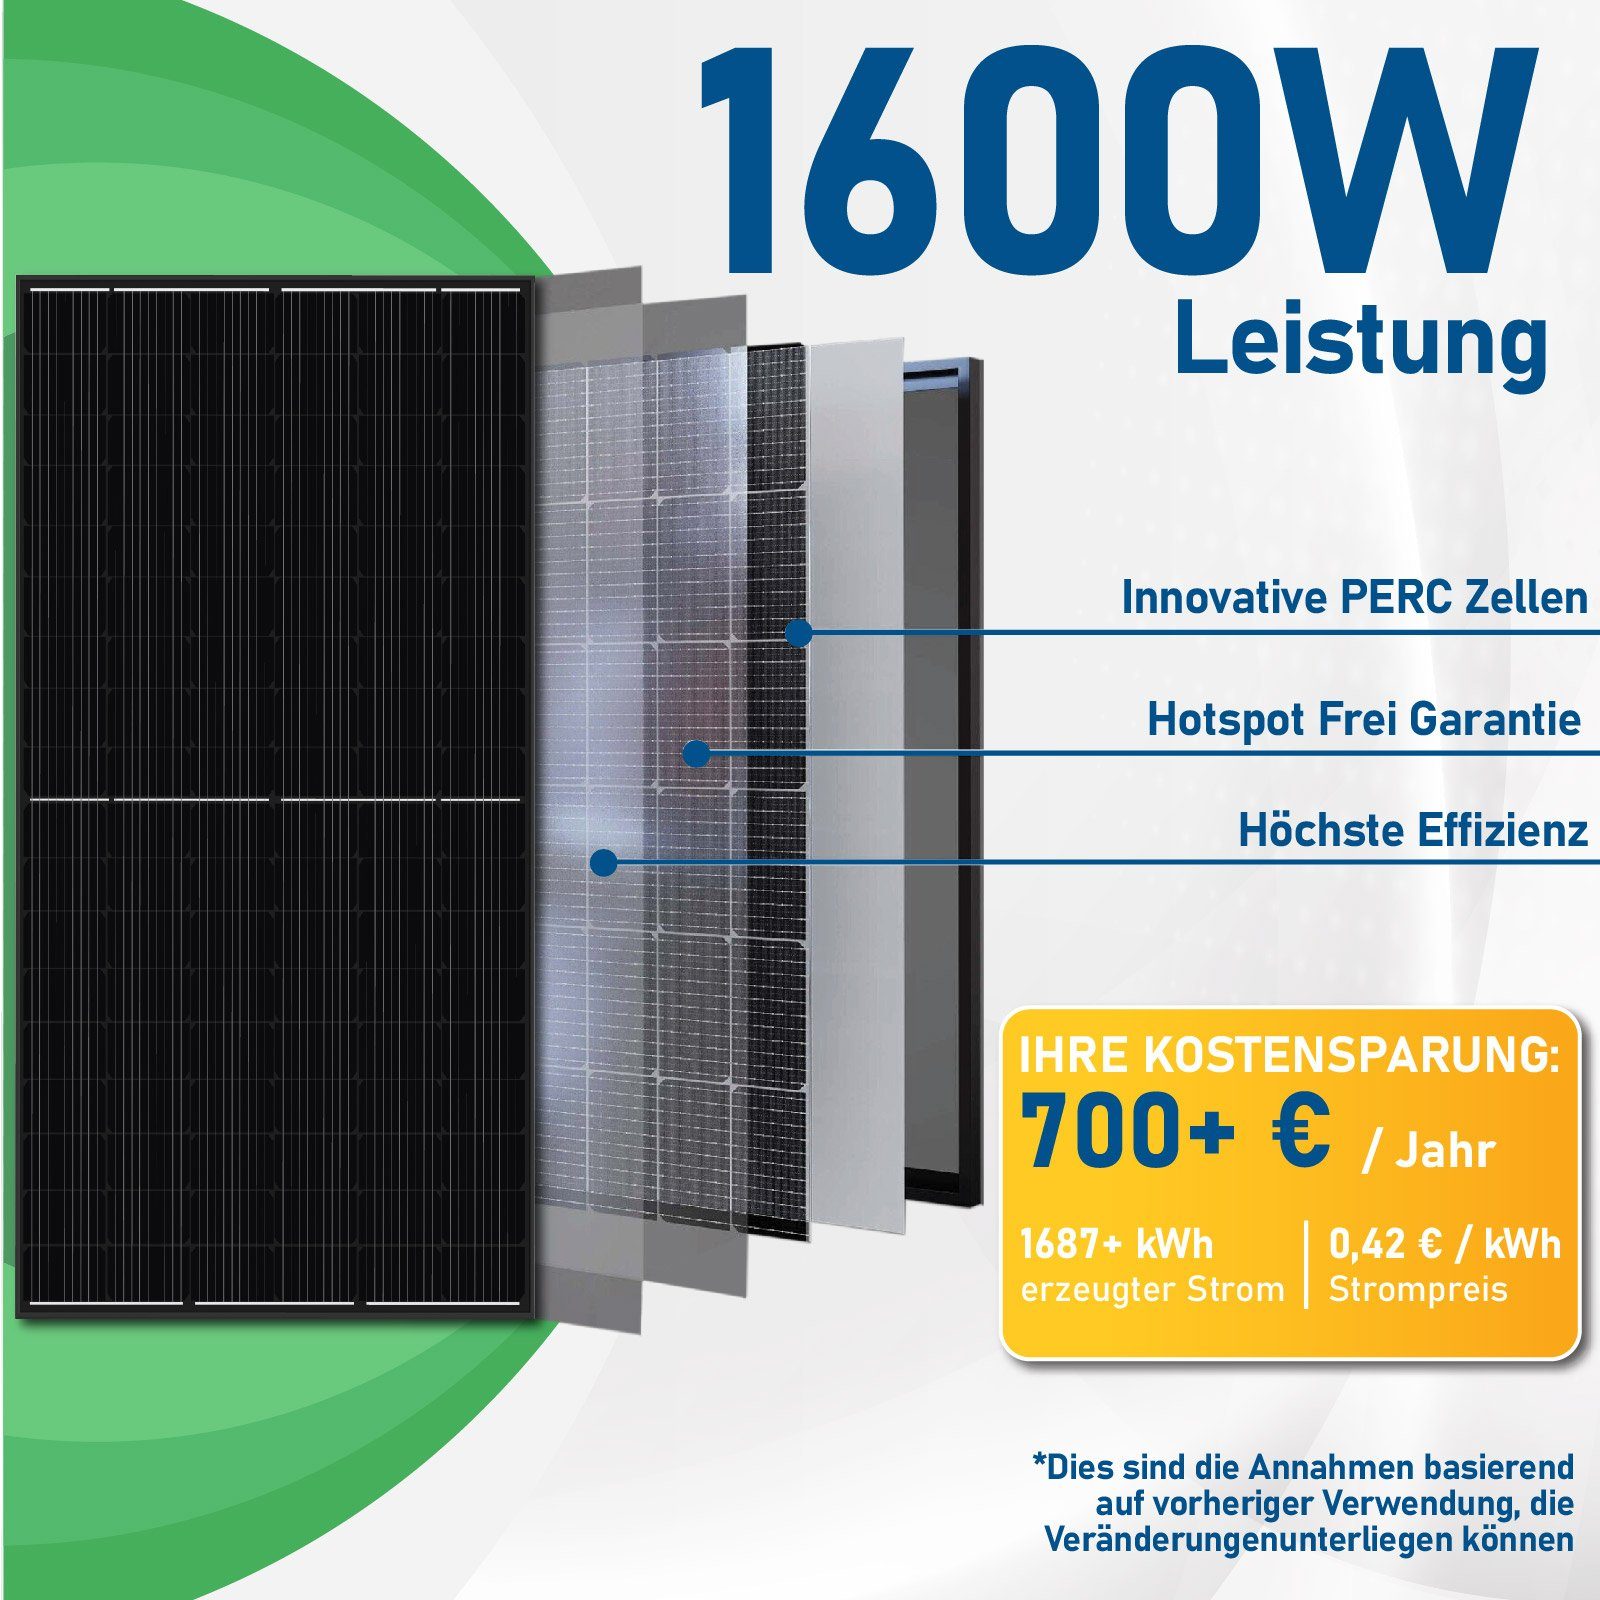 Campergold Solaranlage 1660W Photovoltaik Wechselrichter, Ziegeldach, DTU-WLite-S HMS-1600-4T PV-Montage Balkonkraftwerk, Hoymiles